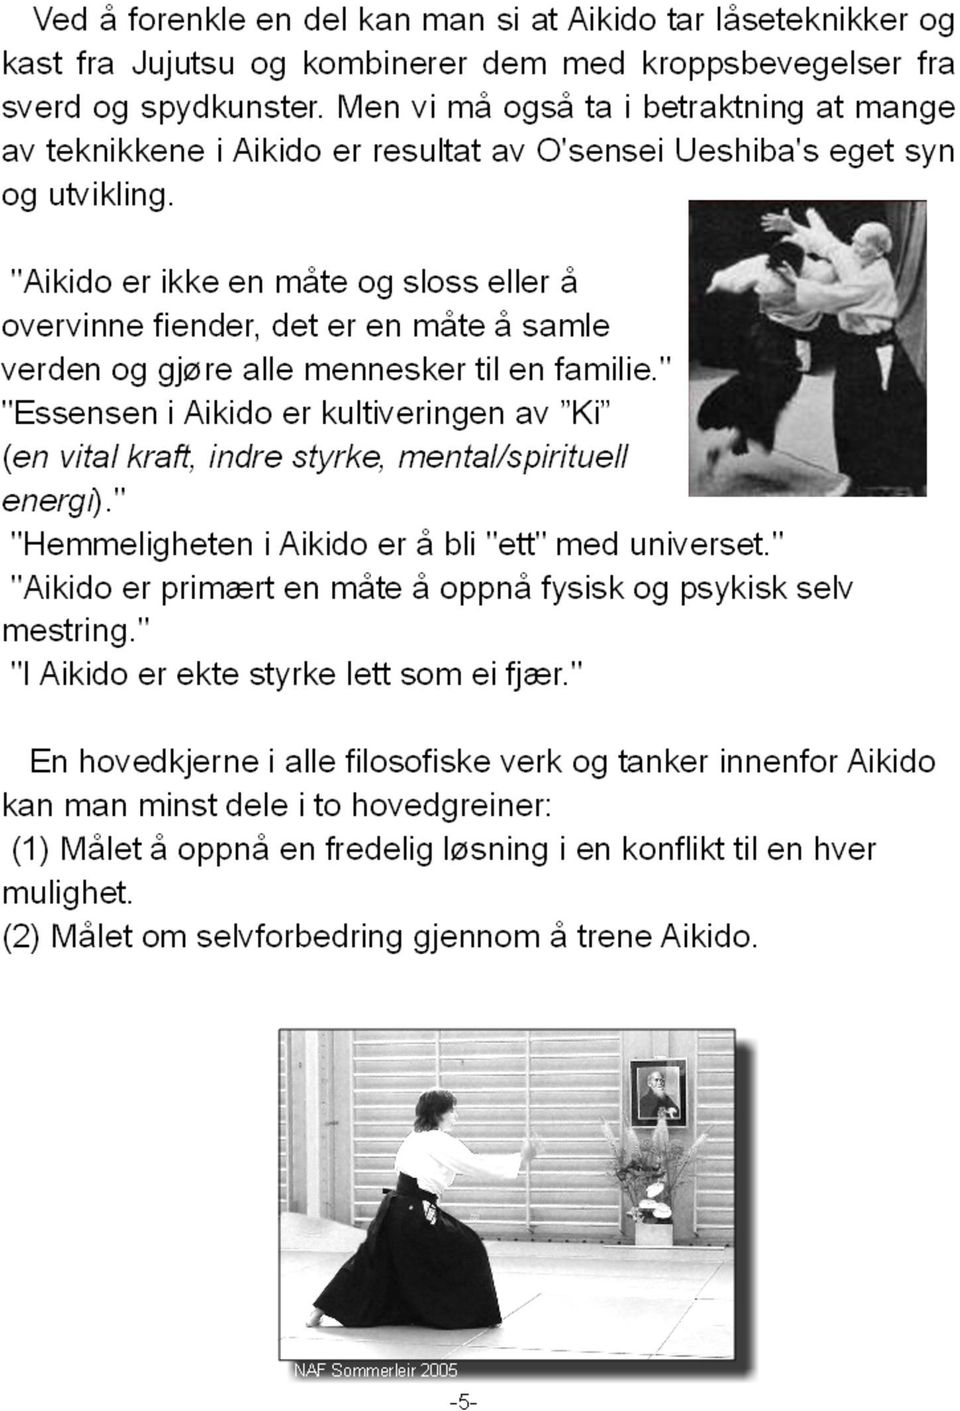 "Aikido er ikke en måte og sloss eller å overvinne fiender, det er en måte å samle verden og gjøre alle mennesker til en familie.